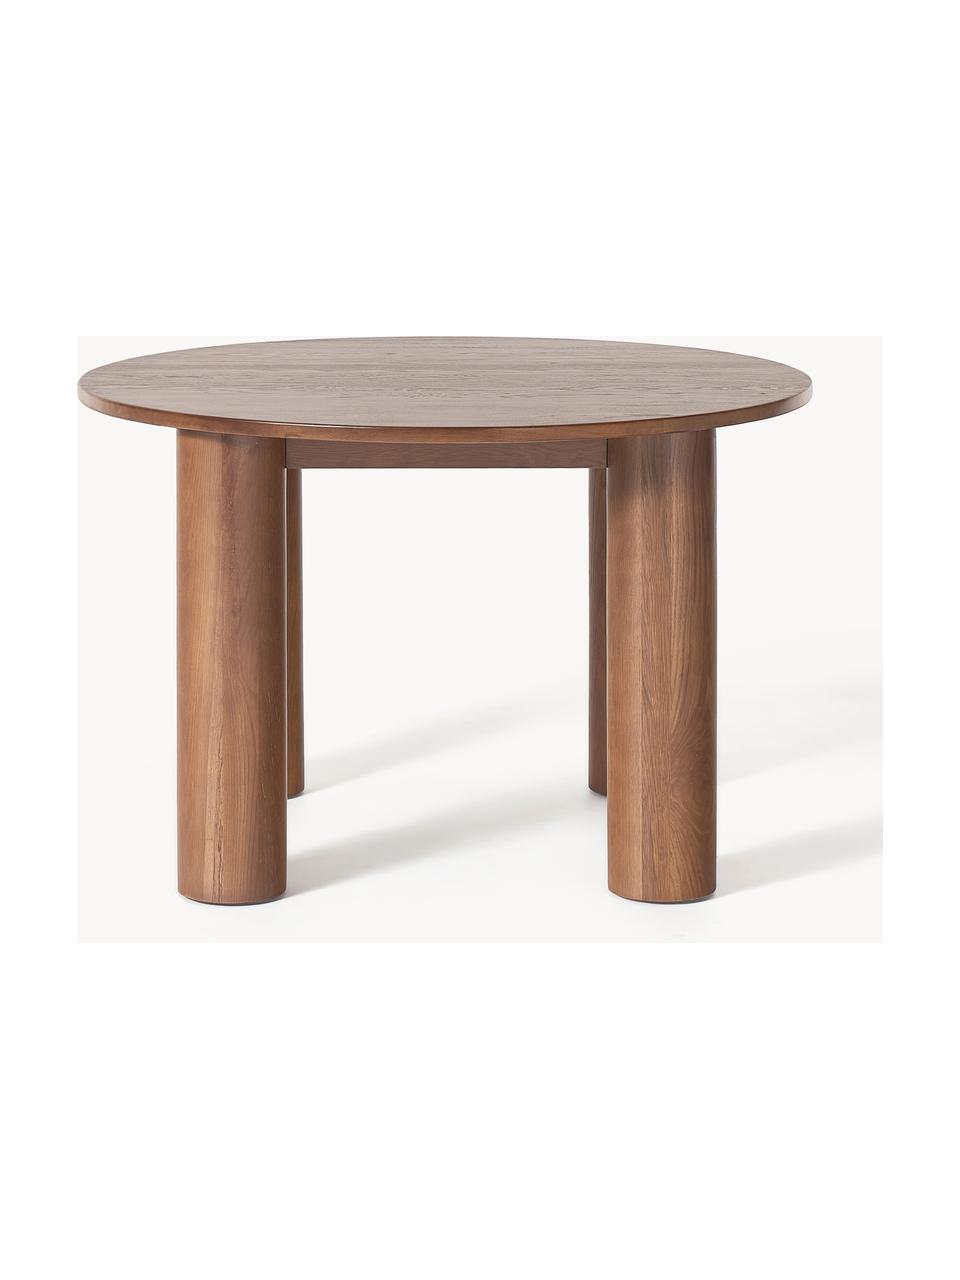 Okrúhly stôl z dubového dreva Ohana, Ø 120 cm, Masívne dubové drevo, ošetrené olejom
Tento produkt je vyrobený z trvalo udržateľného dreva s certifikátom FSC®., Dubové drevo, tmavý olej, Ø 120 cm